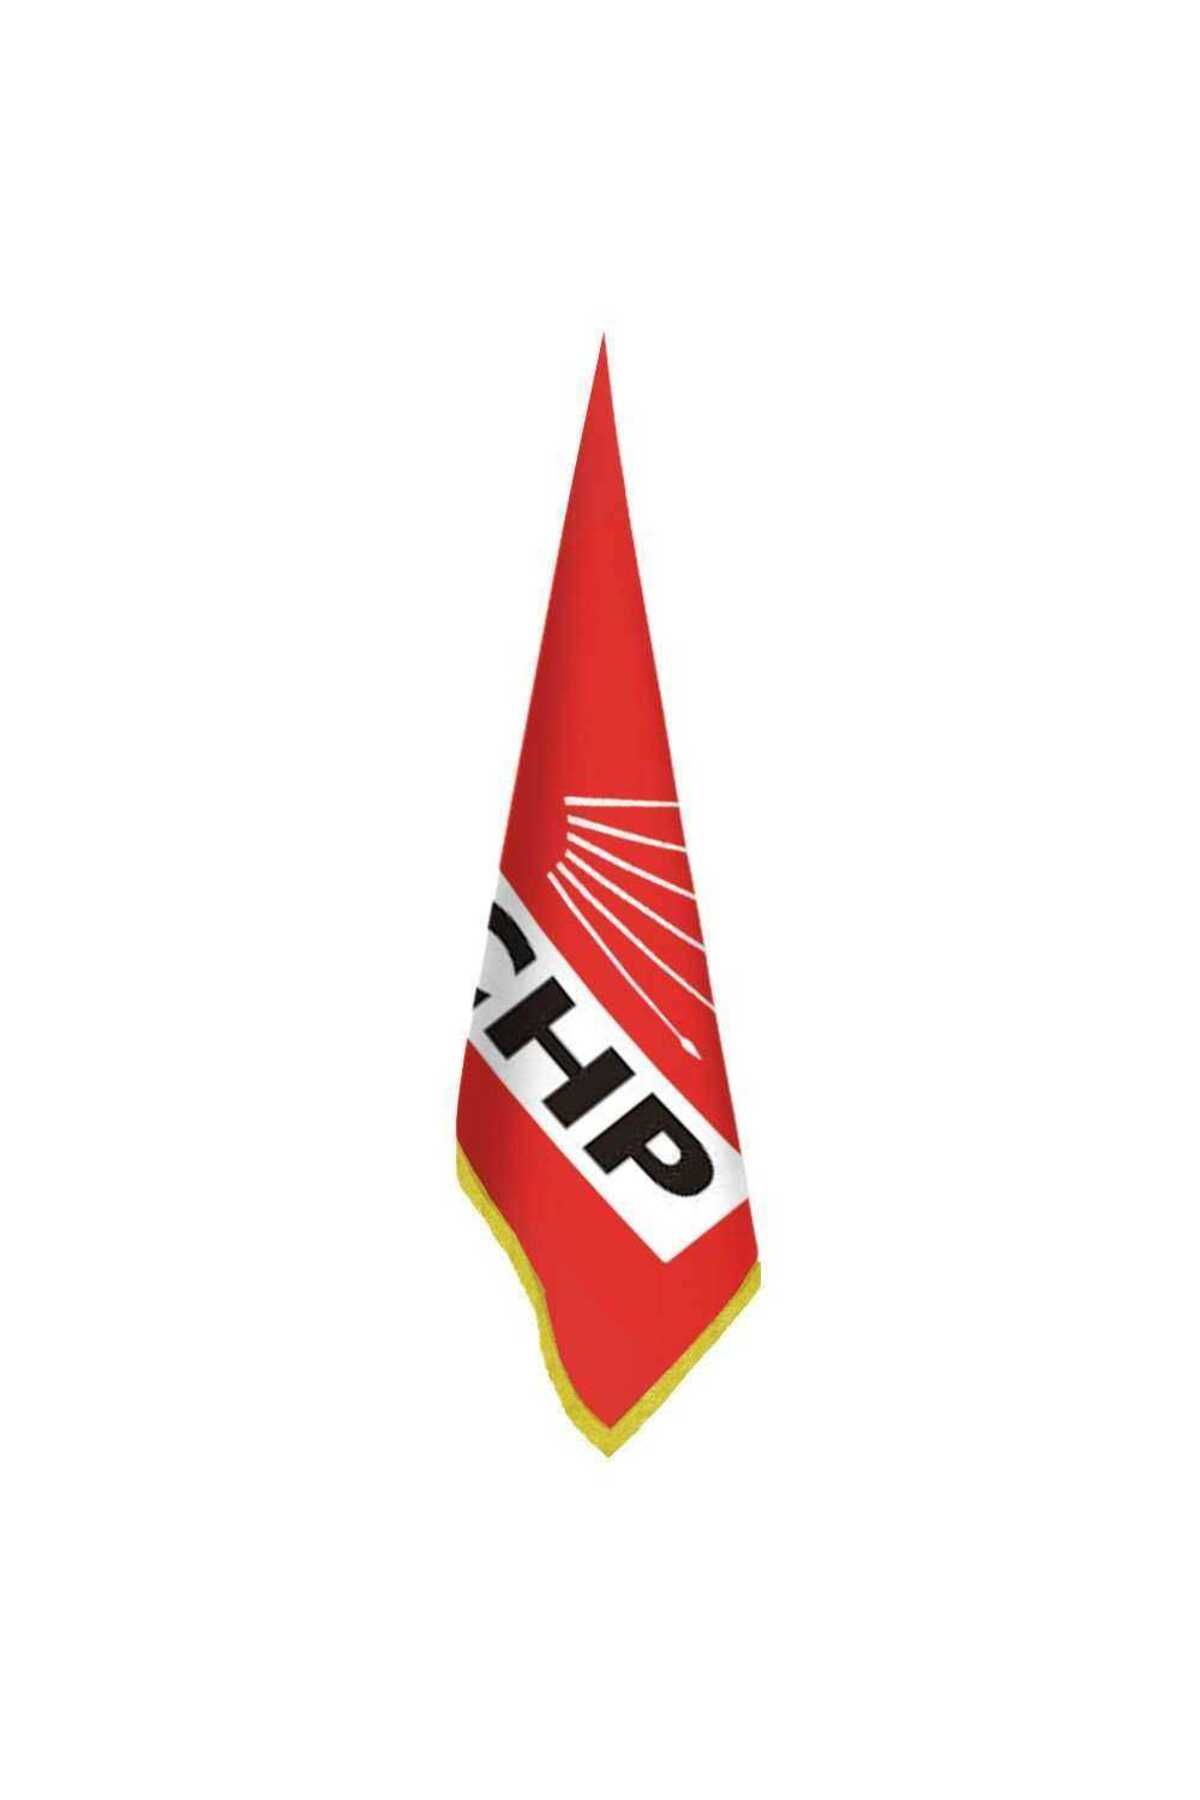 Genel Markalar Cumhuriyet Halk Partisi (chp) Bayrağı - Ofis - Makam -toplantı Odaları - Saçaklı Makam Bayrağı